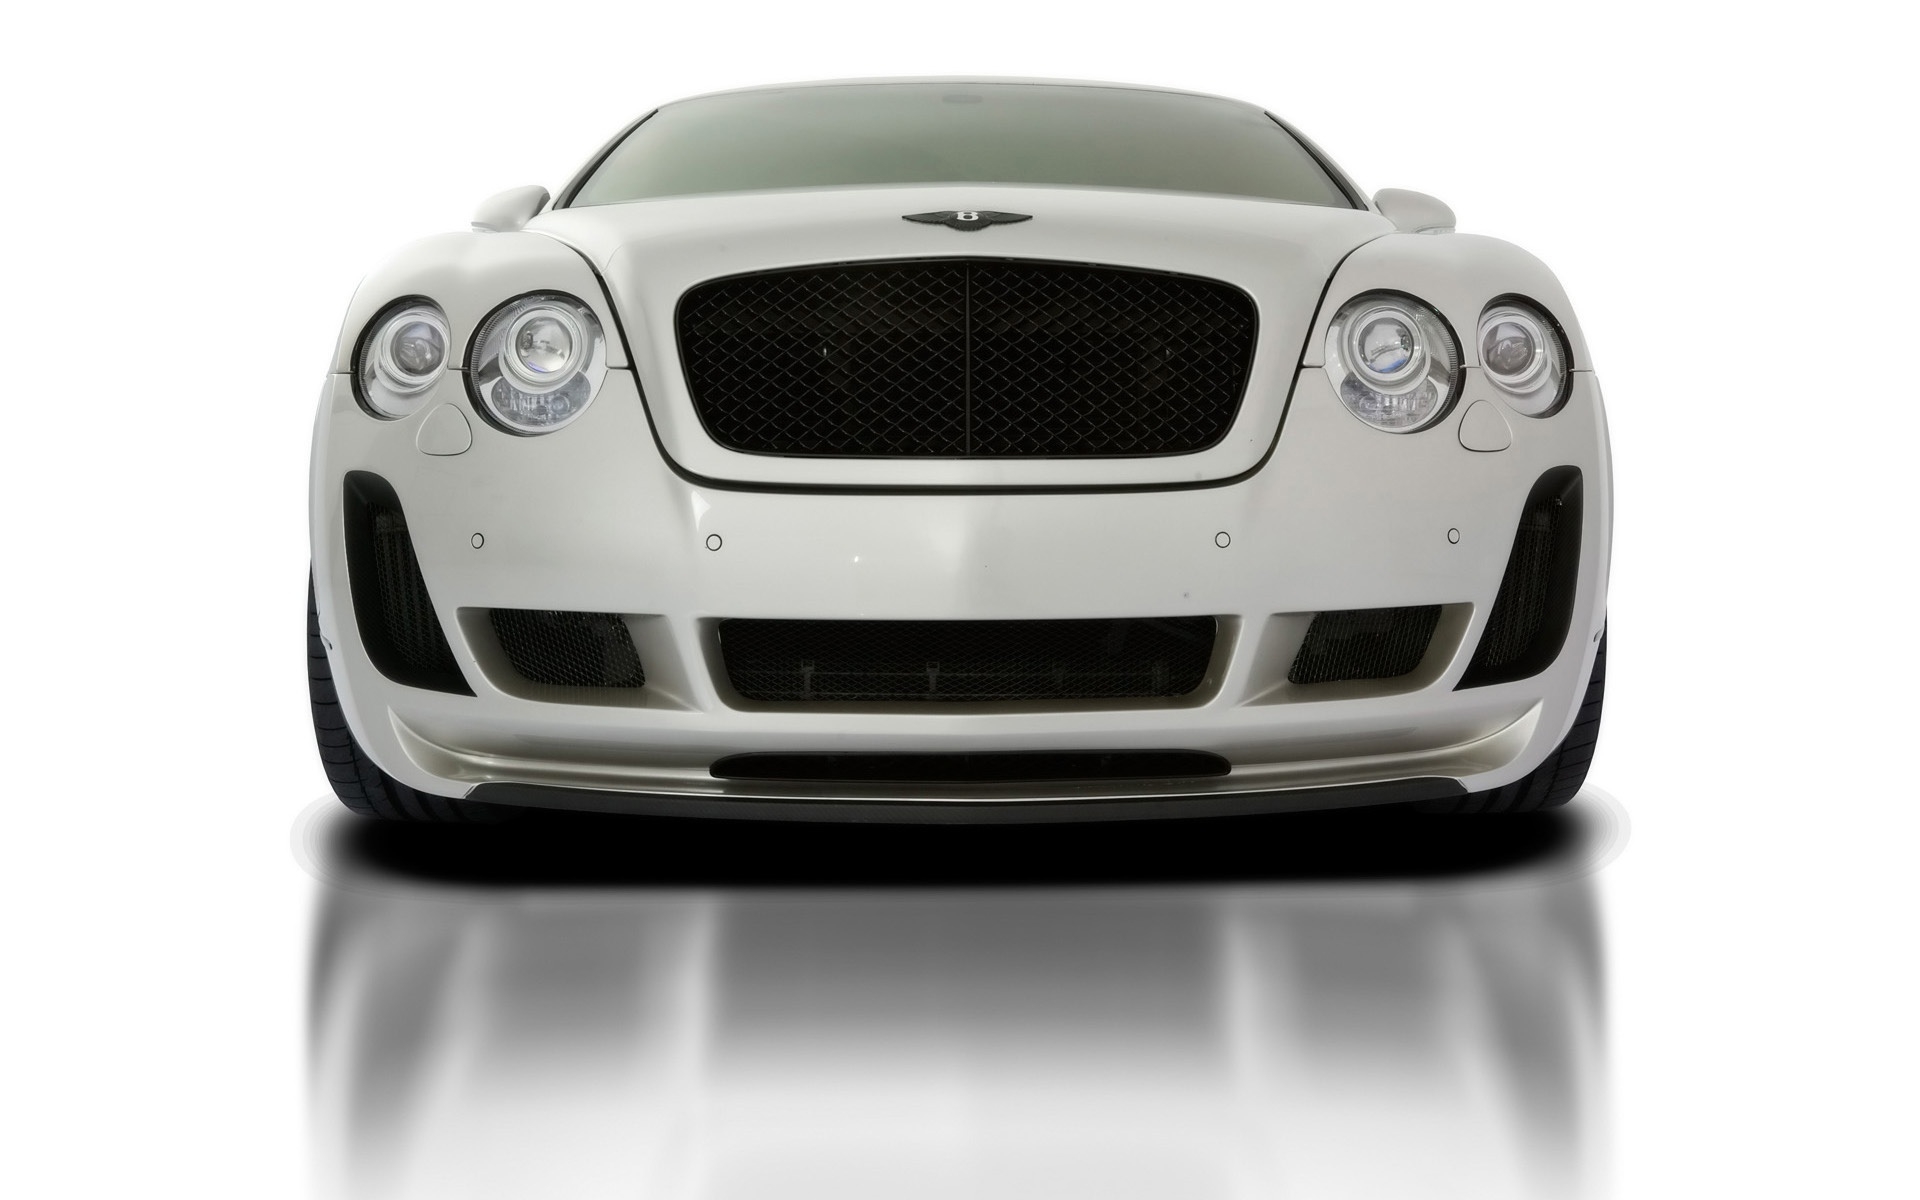 2010 Vorsteiner Bentley Continental GT BR9 Edition for 1920 x 1200 widescreen resolution